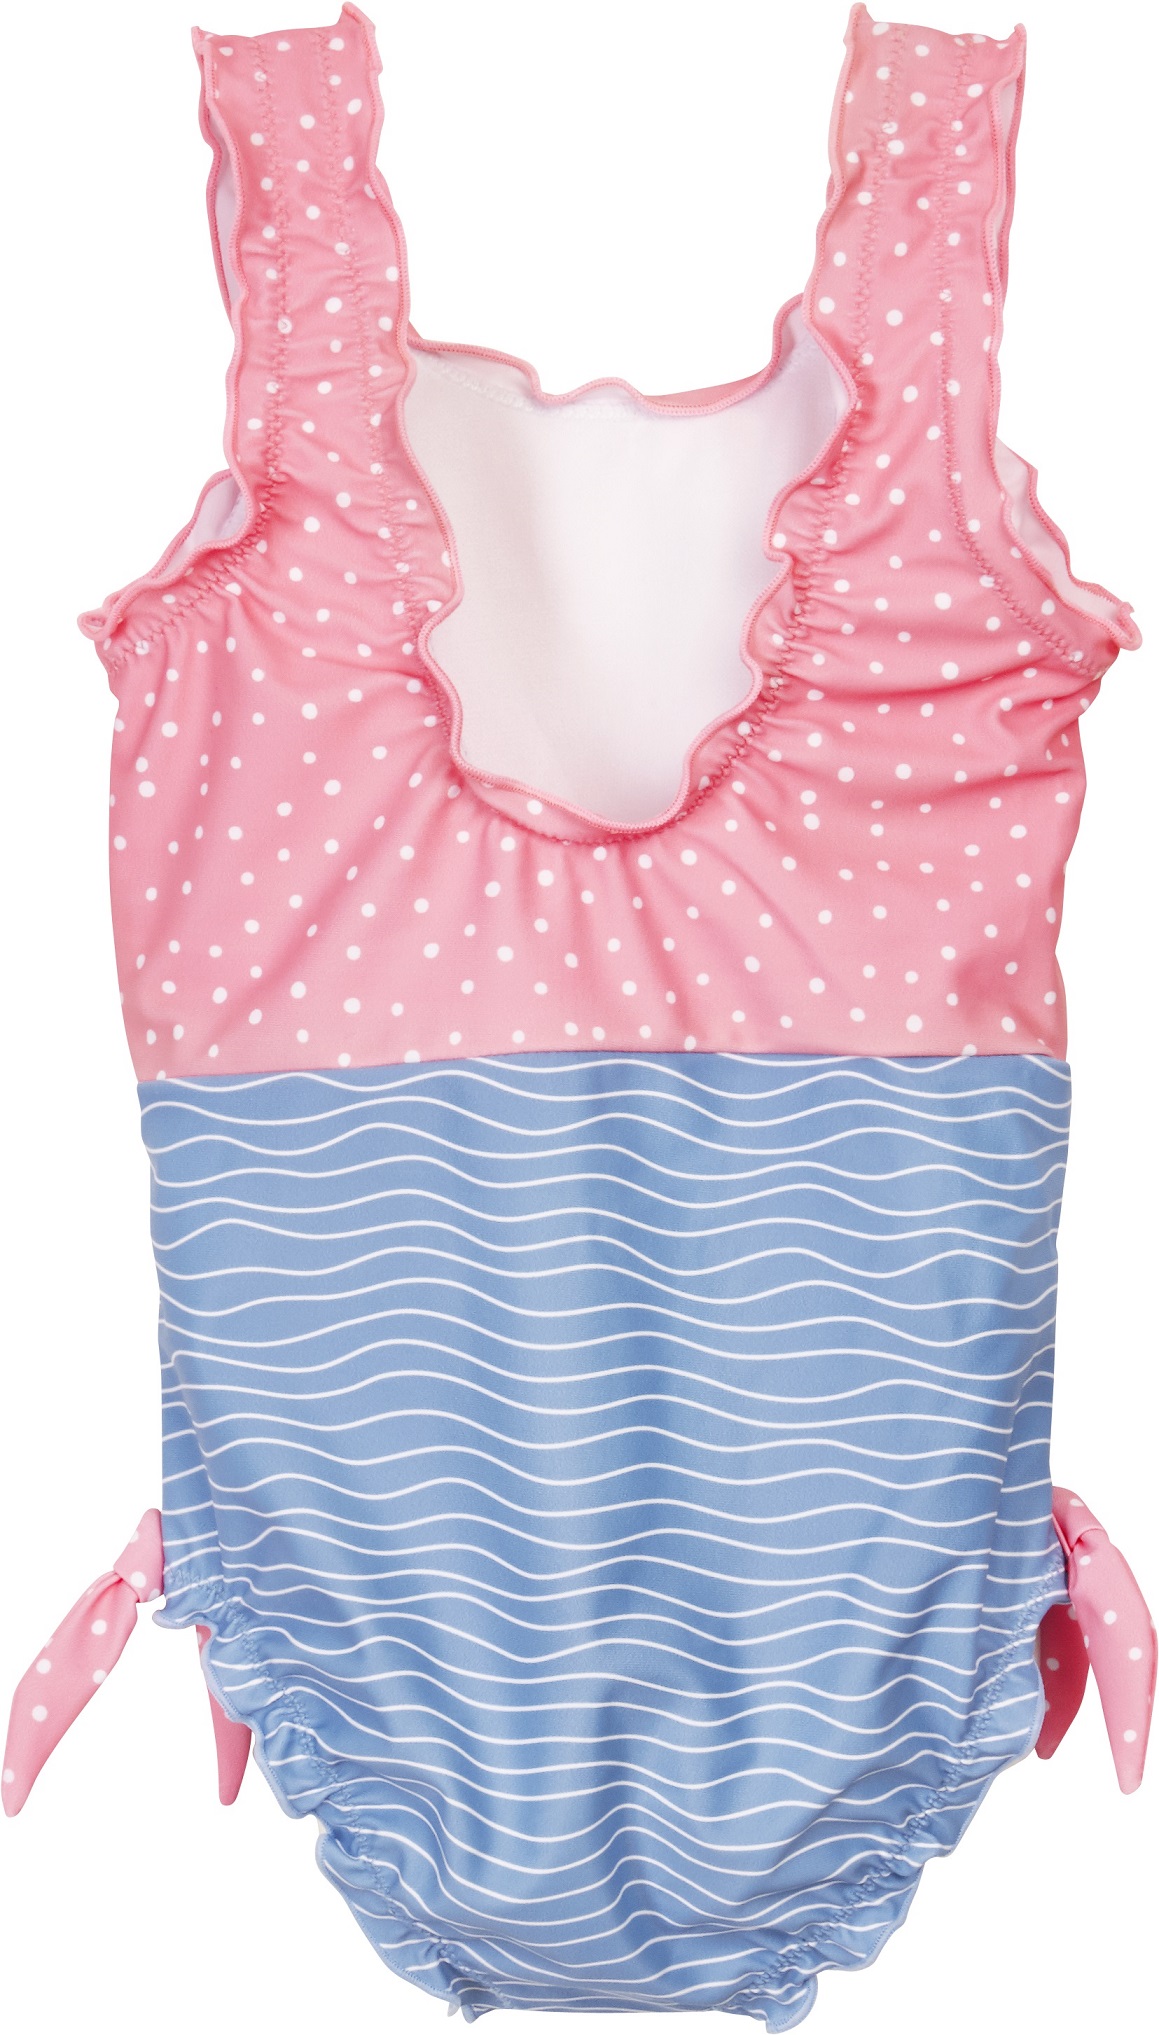 Купальник слитный детский Playshoes 461293, голубой; розовый, 134 козлики брюсе в аквапарке